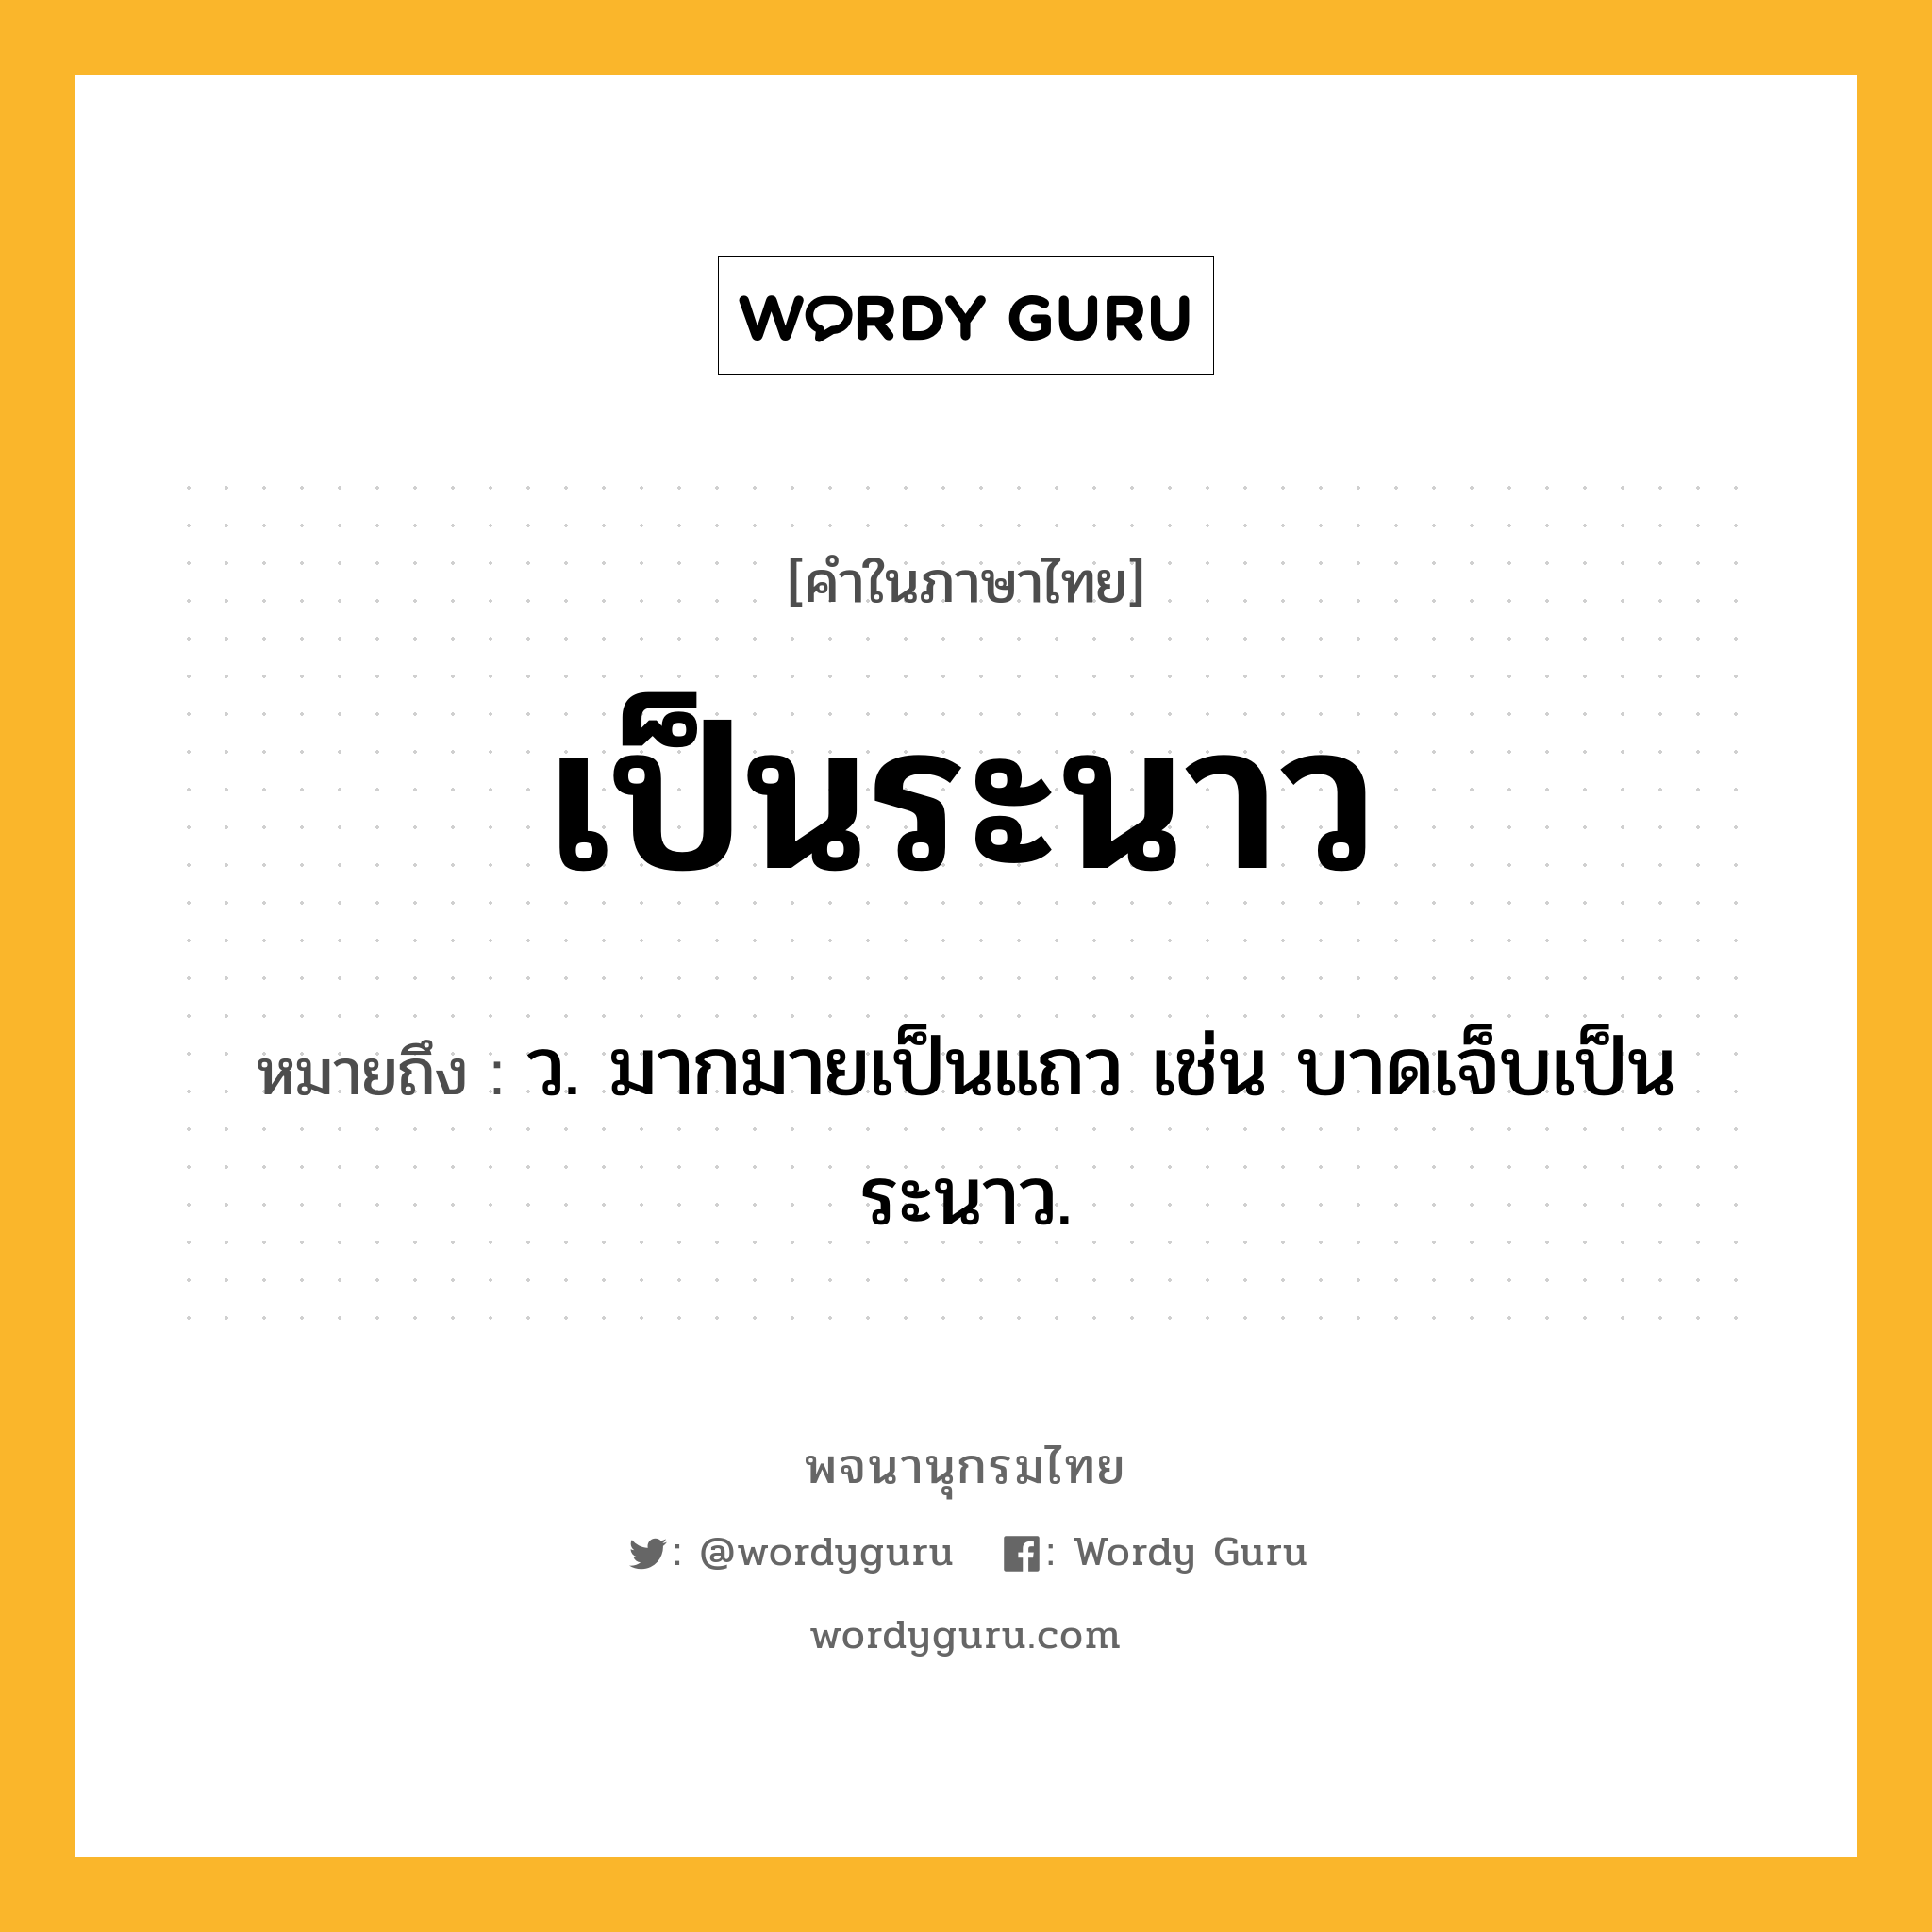 เป็นระนาว หมายถึงอะไร?, คำในภาษาไทย เป็นระนาว หมายถึง ว. มากมายเป็นแถว เช่น บาดเจ็บเป็นระนาว.